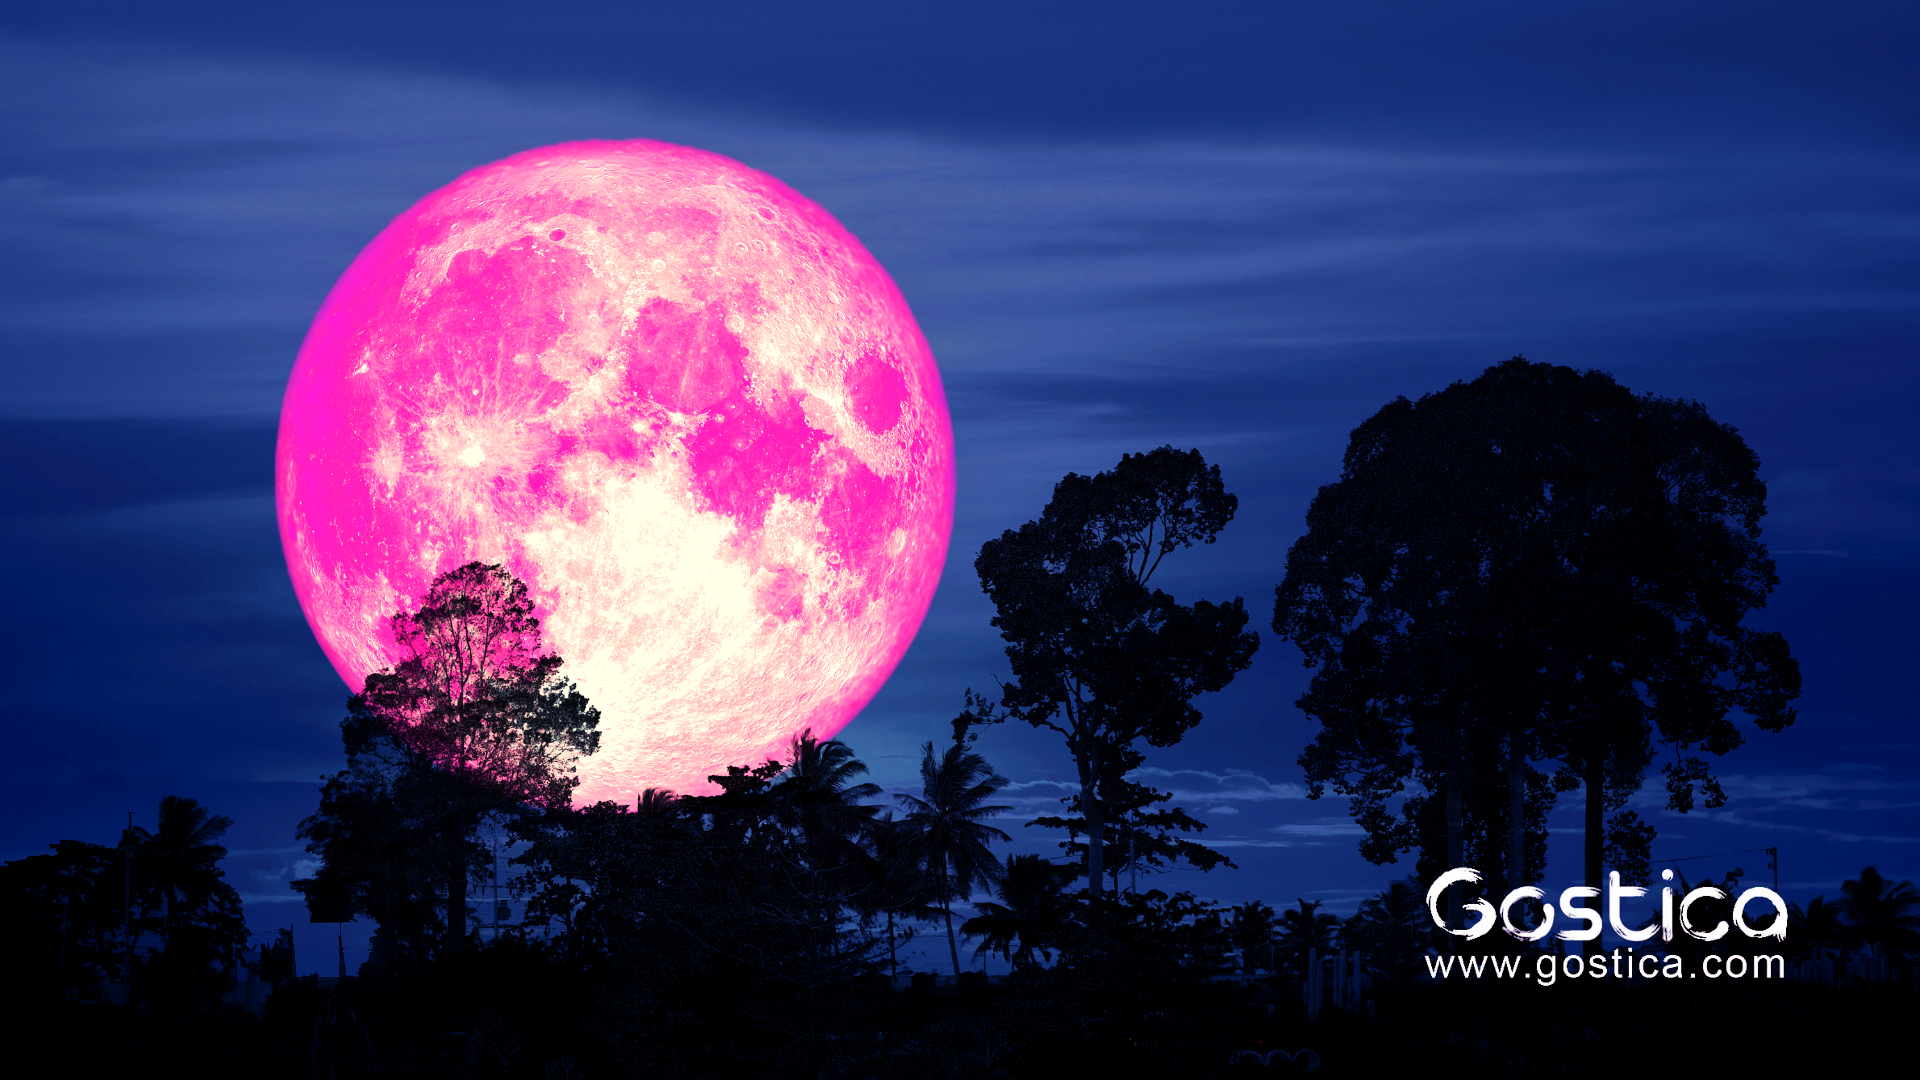 Одинокая луна розовая